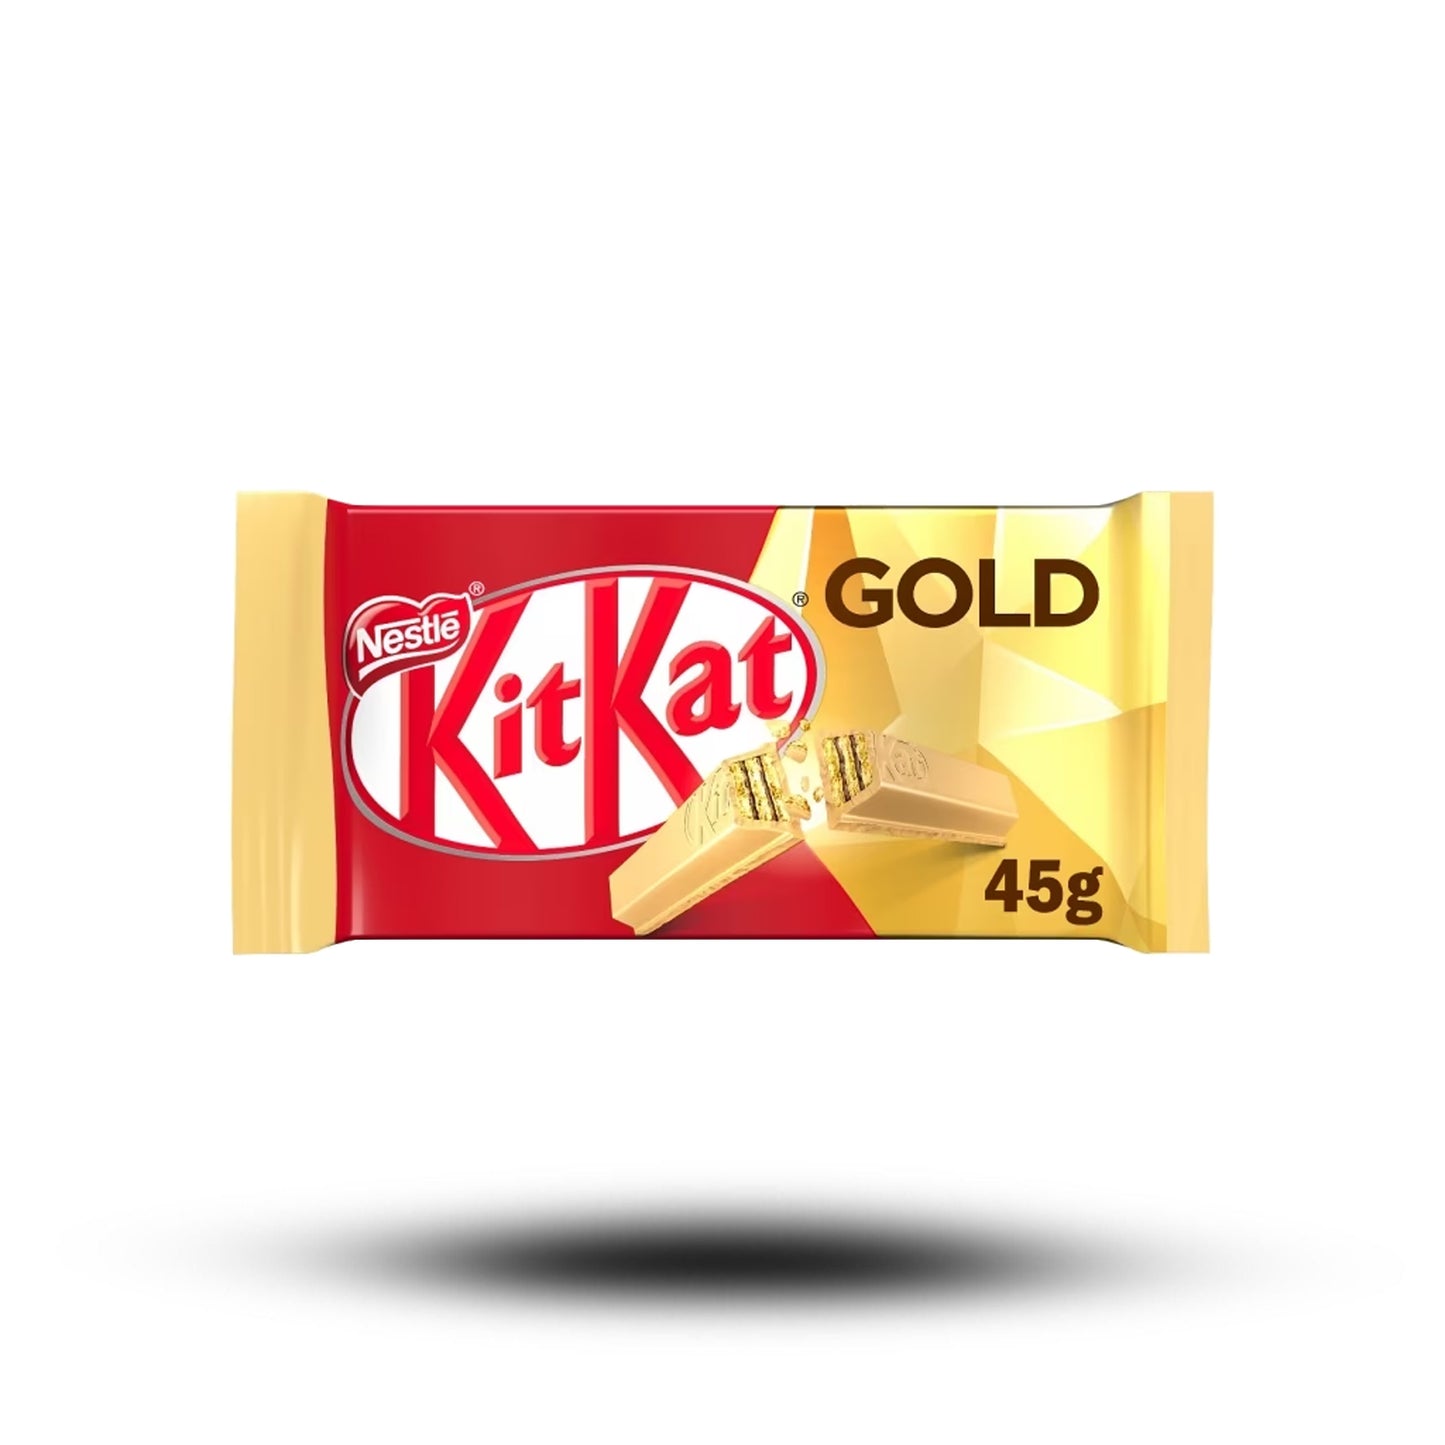 KitKat Gold 45g